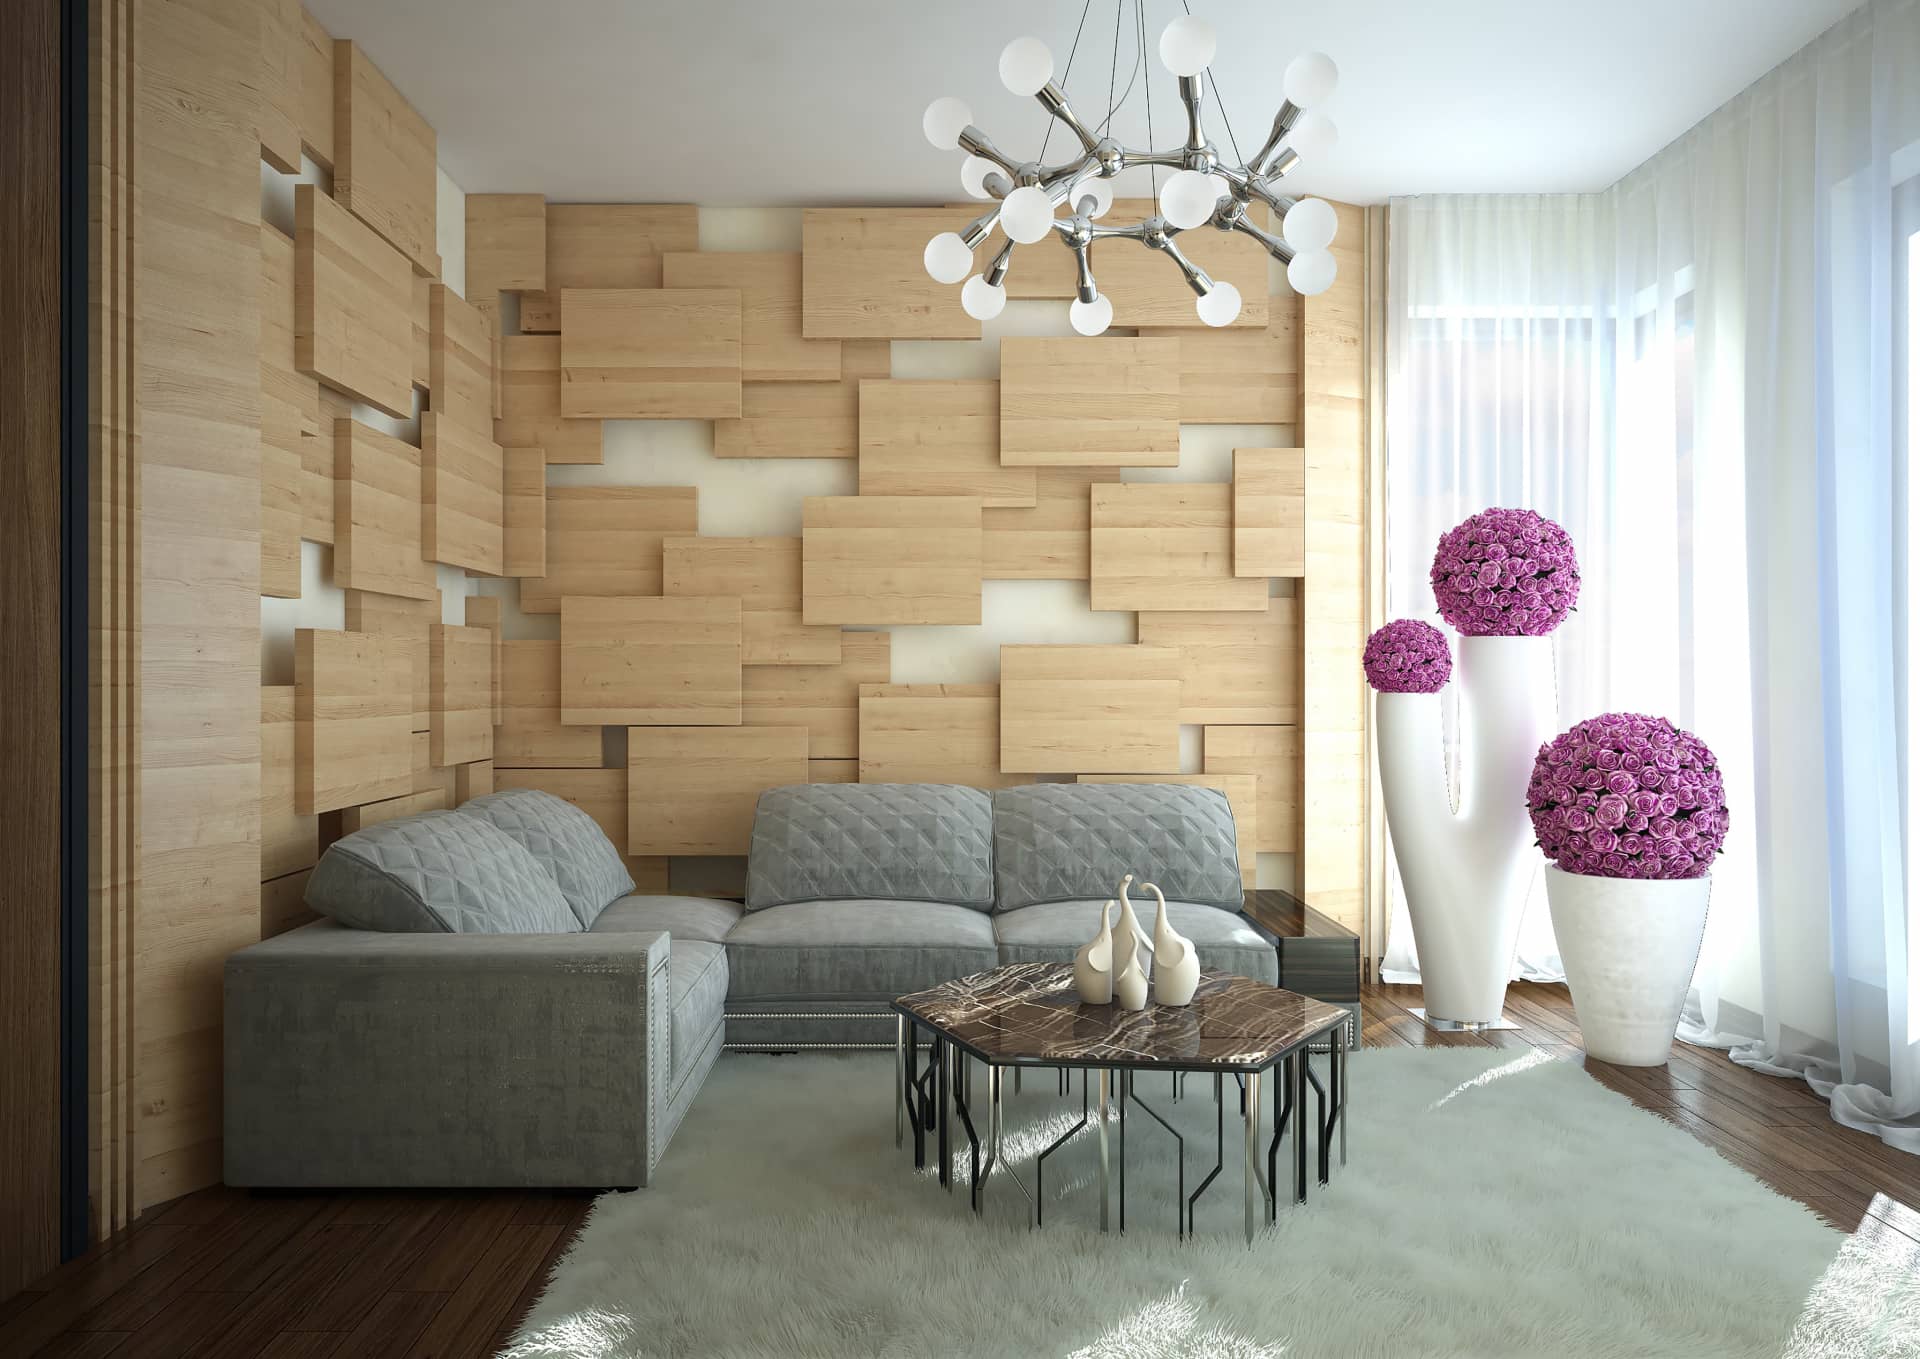 Длинный диван серебристого цвета с декоративными цветами малинового оттенка